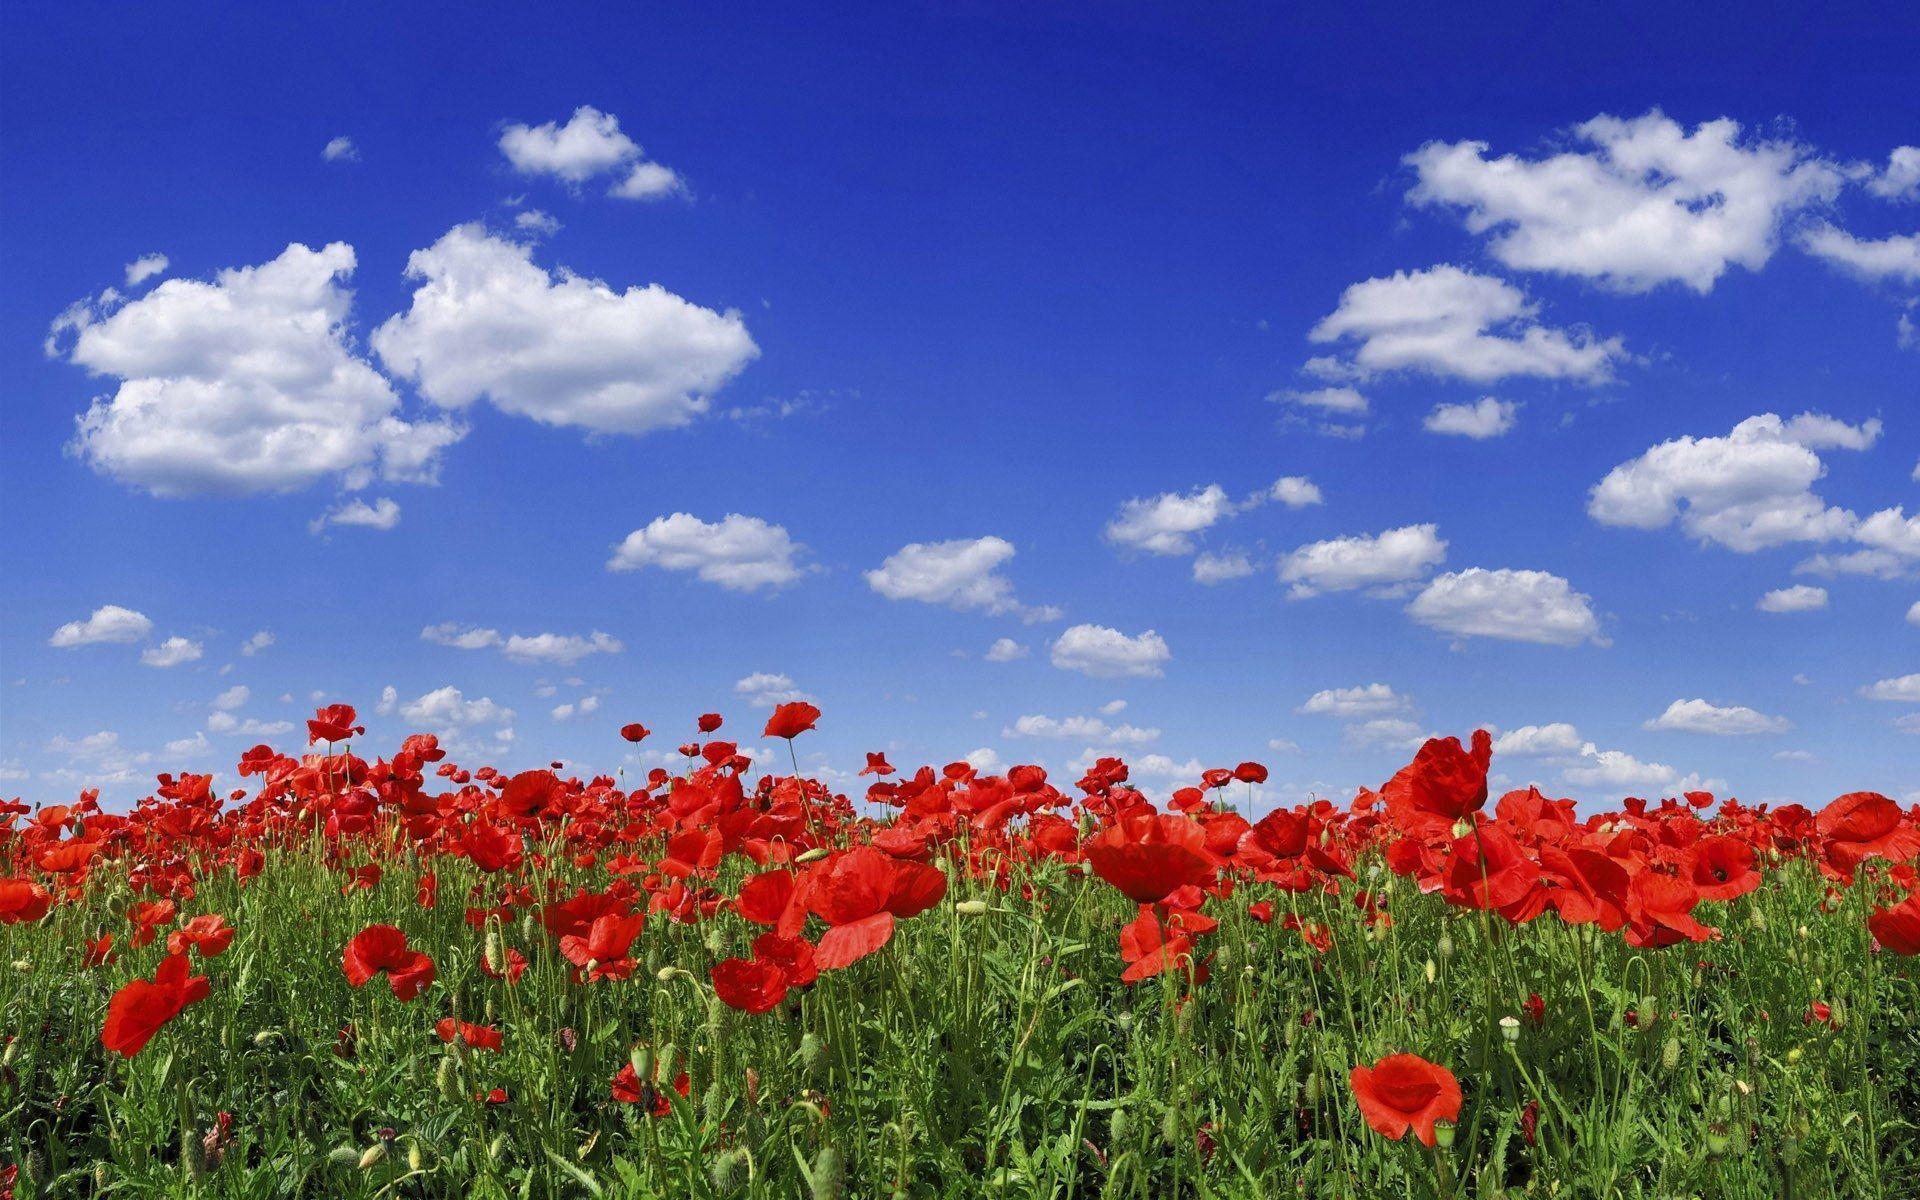 Poppy flower field under blue sky Wallpaper Wallpaper 71908